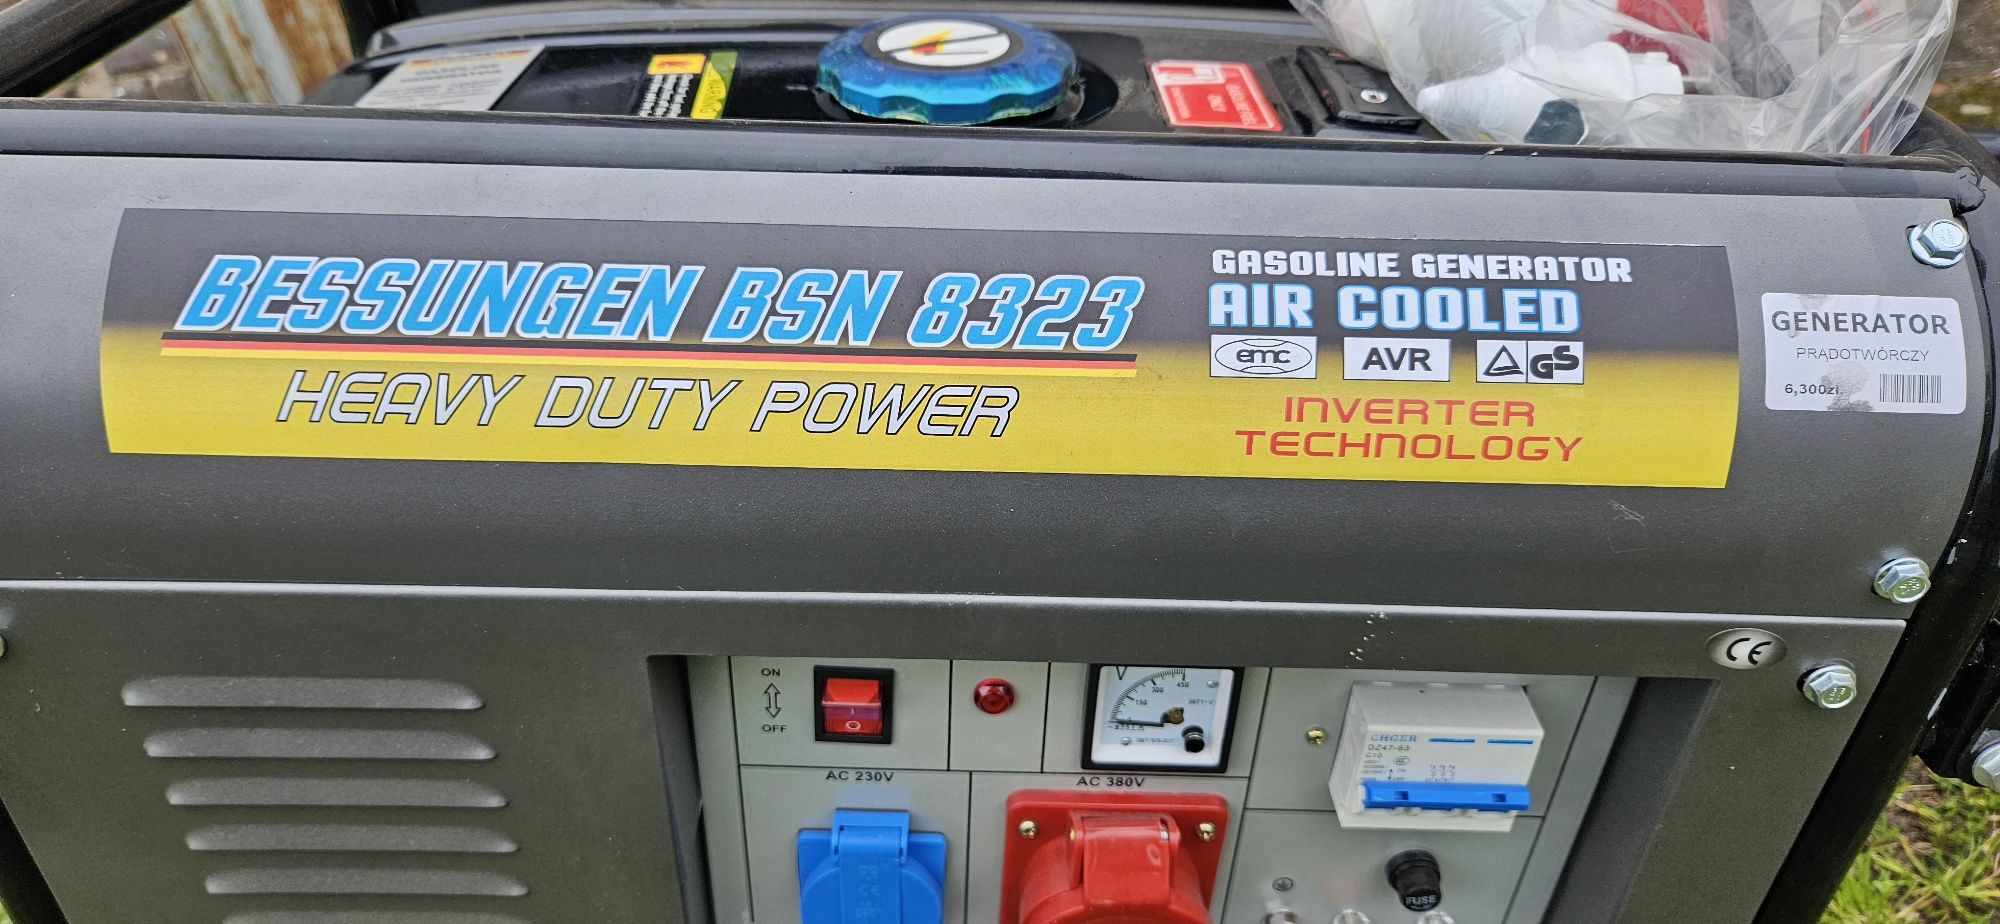 Generator prądotwórczy Bessungen BSN 8323